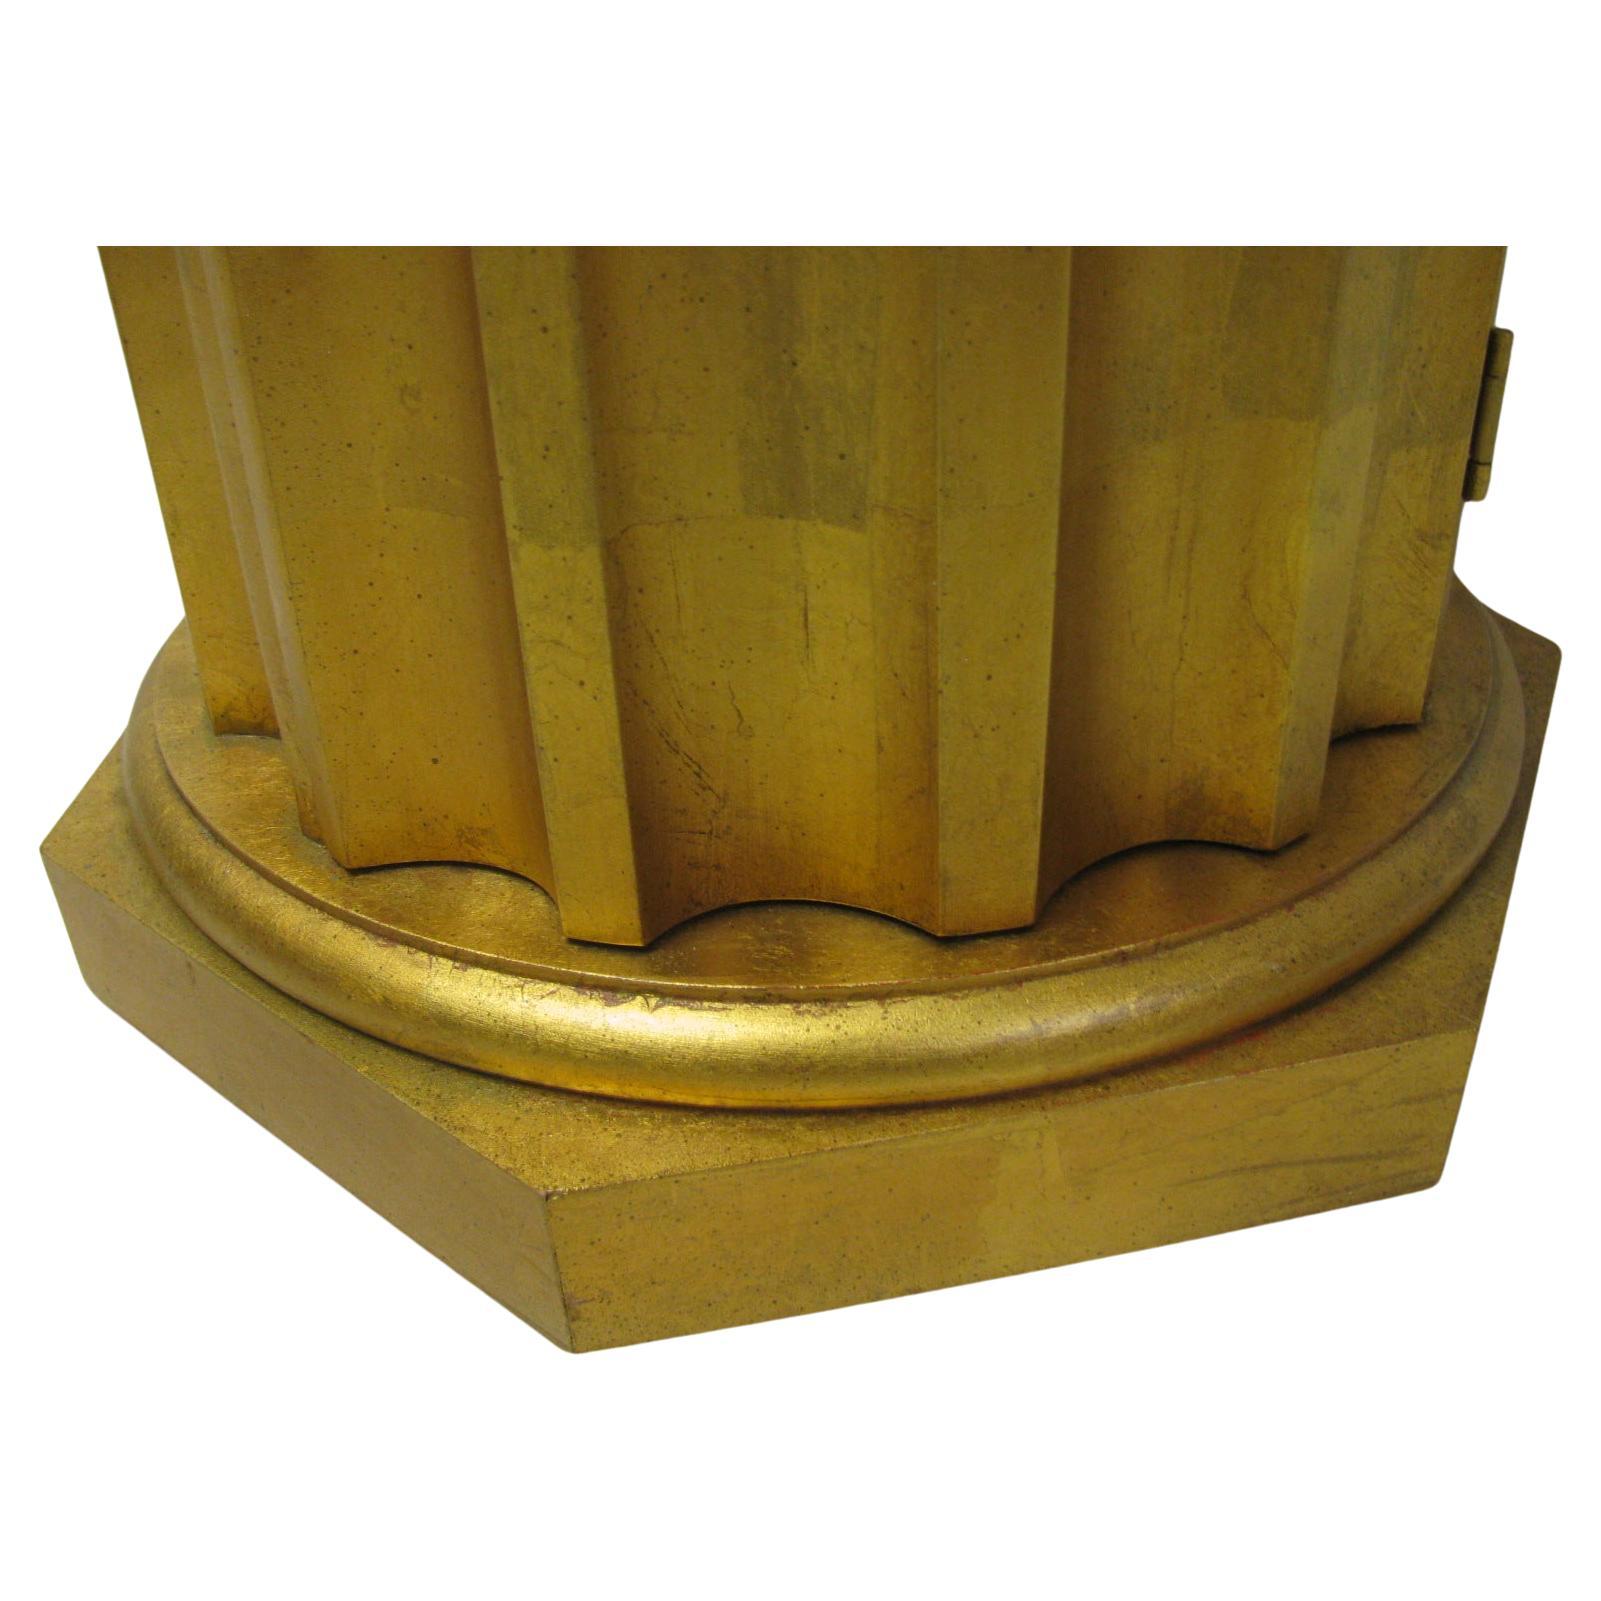 Des tables simples et très élégantes avec une seule porte pour le rangement. Les demi-colonnes cannelées dorées sont en bois massif sculpté avec de lourdes bases en bois. Les dessus de marbre sont signés Portugal.